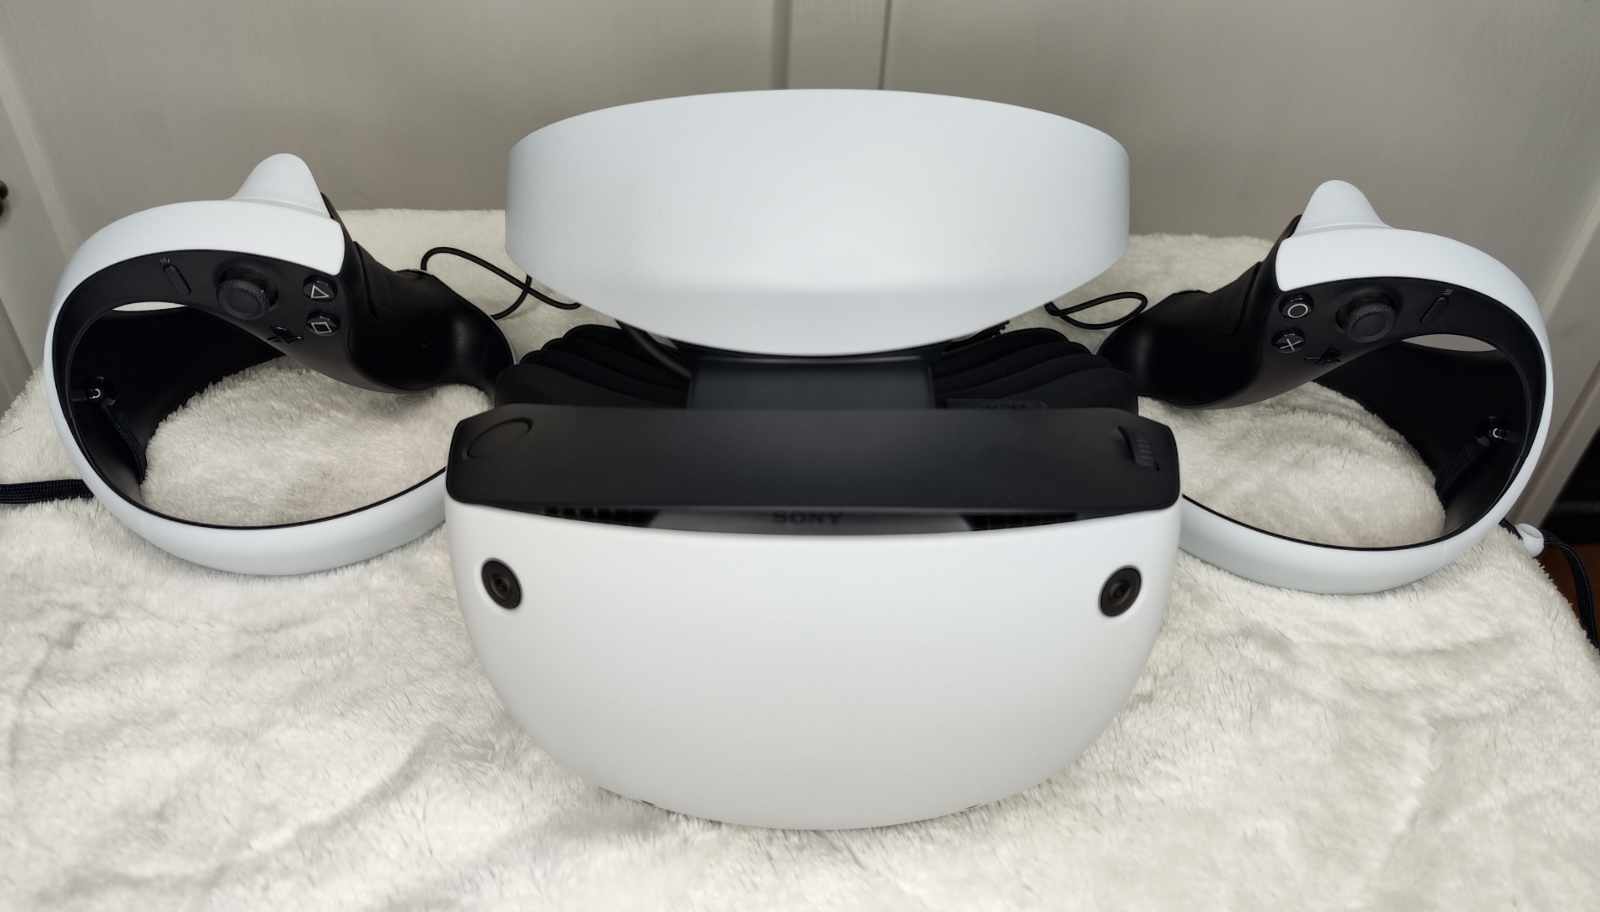 PlayStation VR2: Mein Erfahrungsbericht zu VR-Headset Sonys